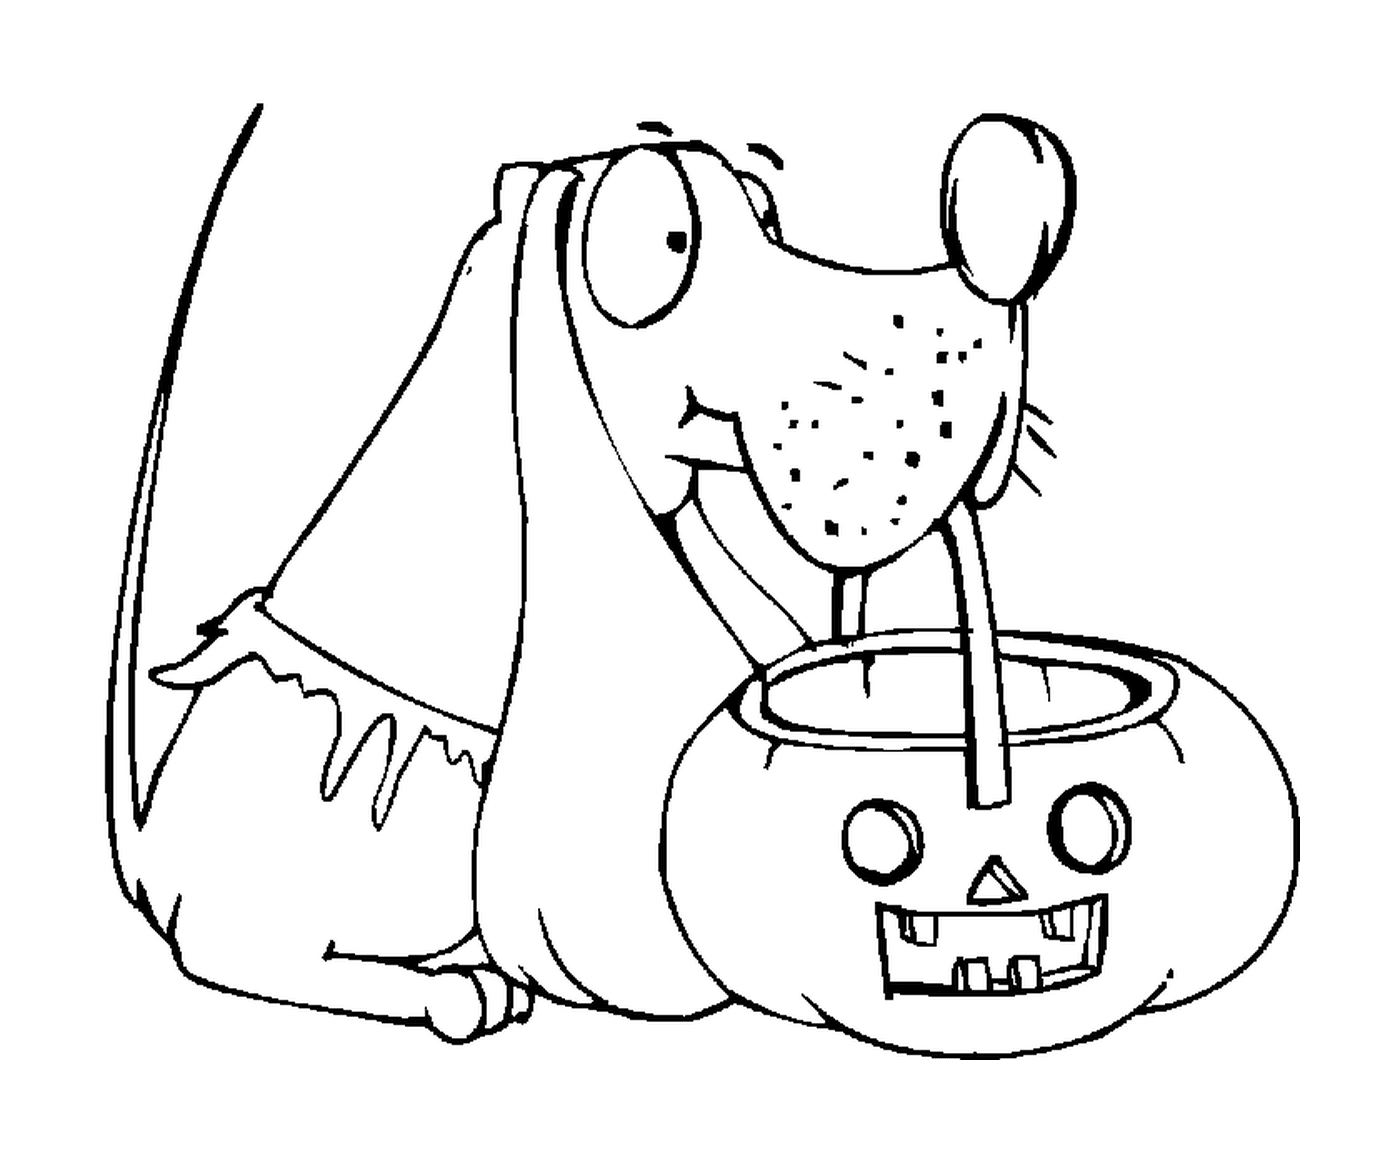  Cane con una zucca di Halloween 